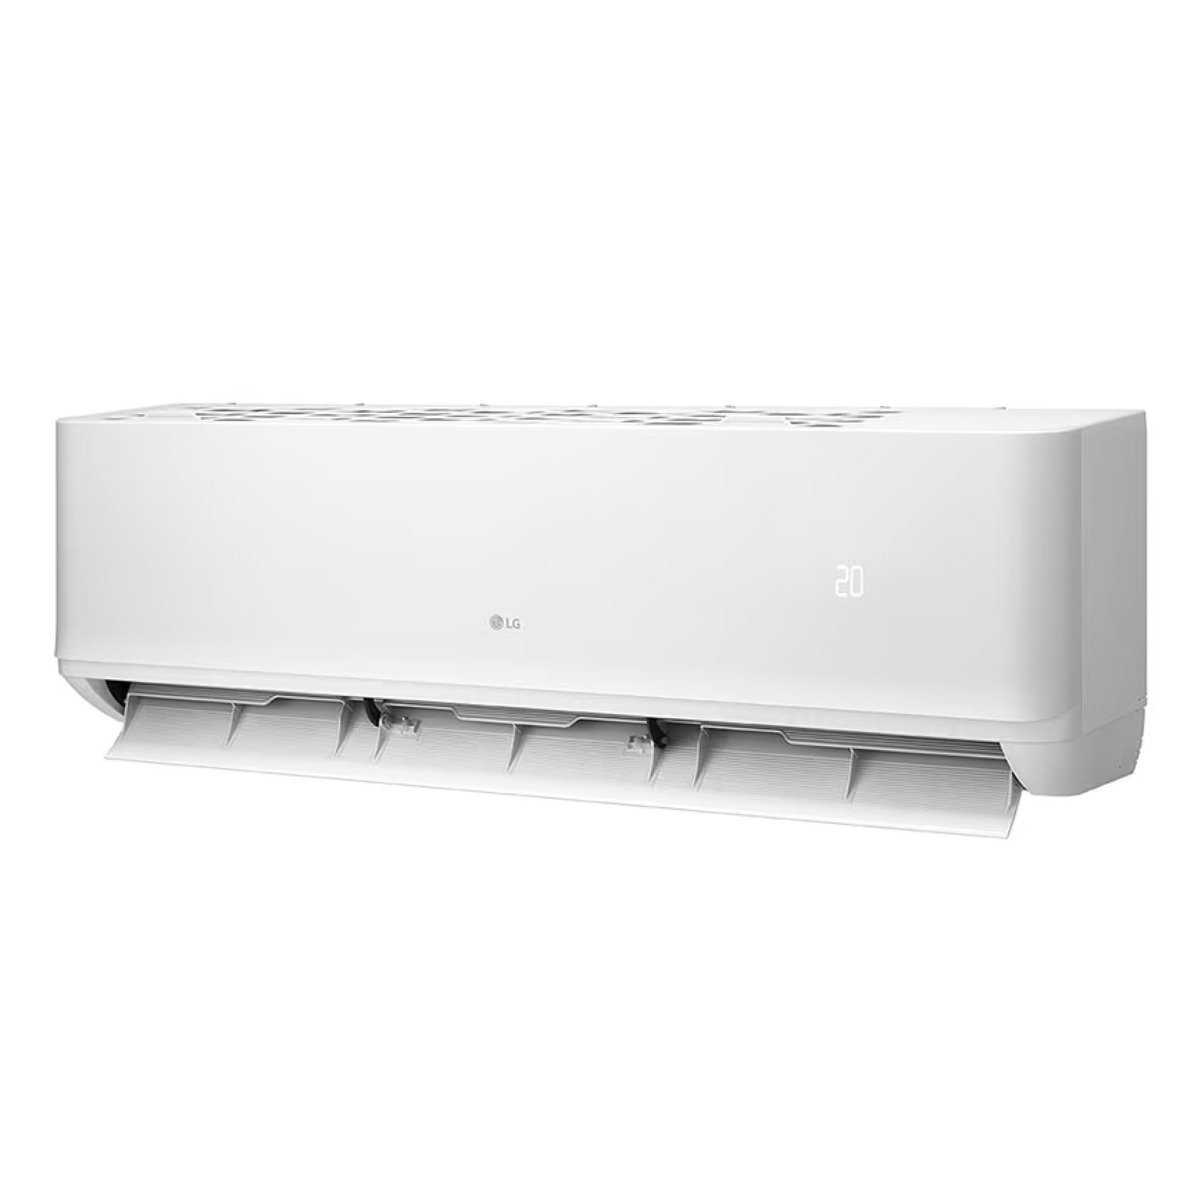 LG Split Air Conditioner LO182C0 1.5Ton Cool